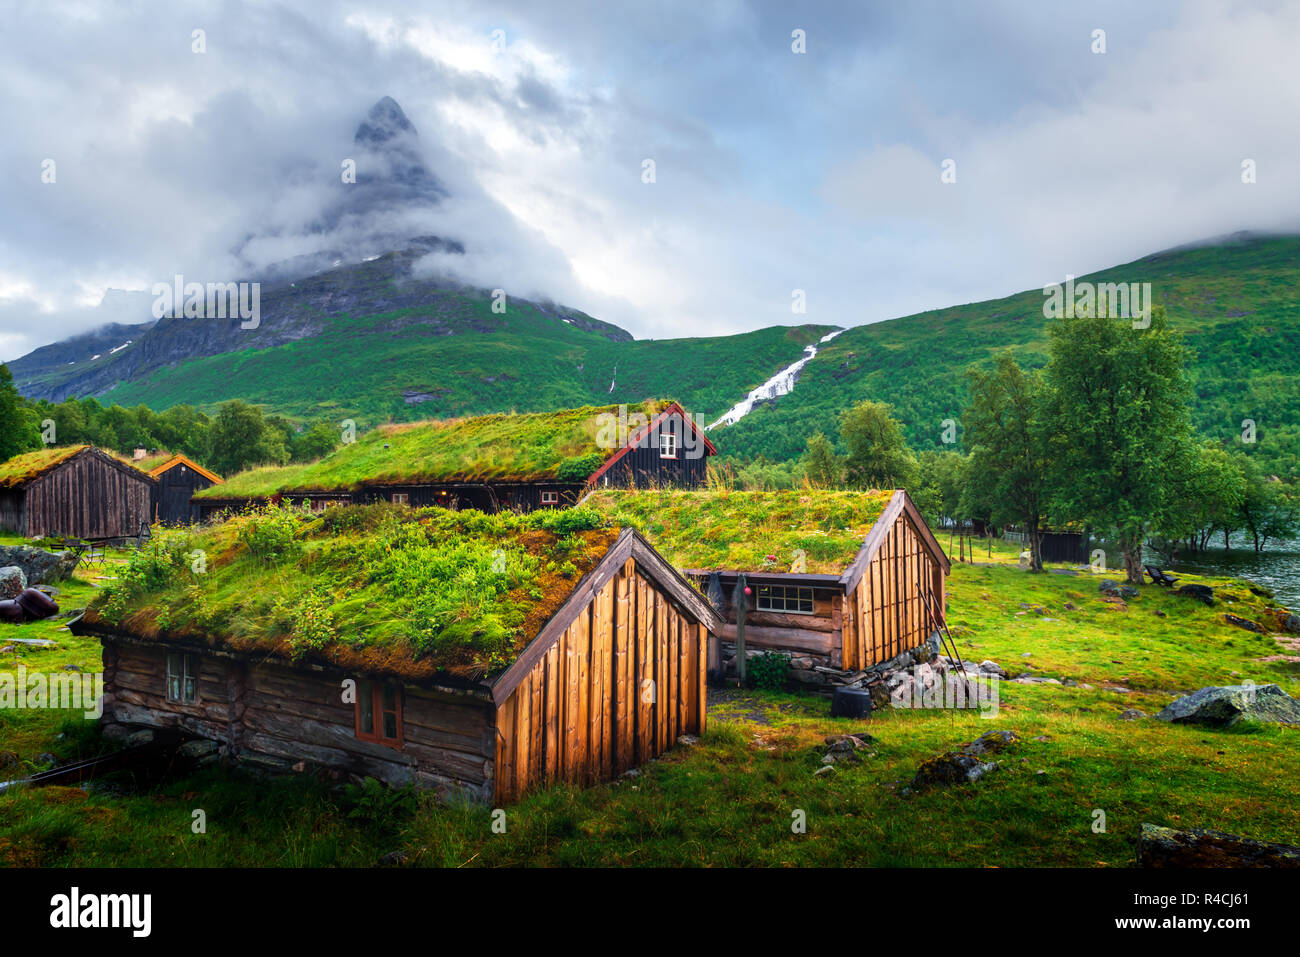 Vieilles maisons en norvégien typique avec des toits en herbe Innerdalen - la Norvège est plus belle vallée de montagne, près de l'Innerdalsvatna lake. La Norvège, Europe Banque D'Images